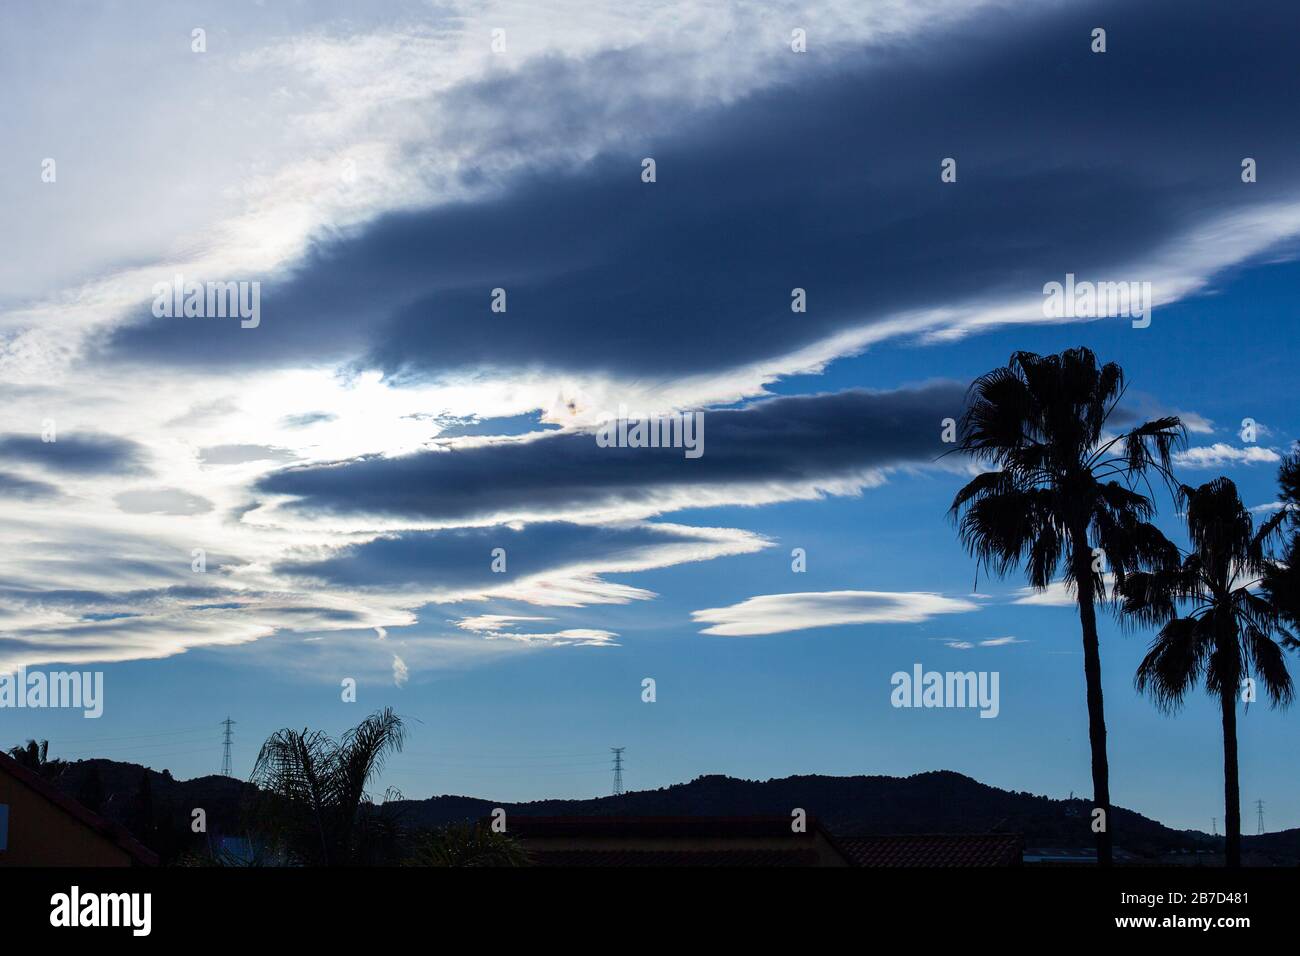 Silhouettes de tours haute tension et palmiers sur bleu ciel avec des nuages blancs Banque D'Images